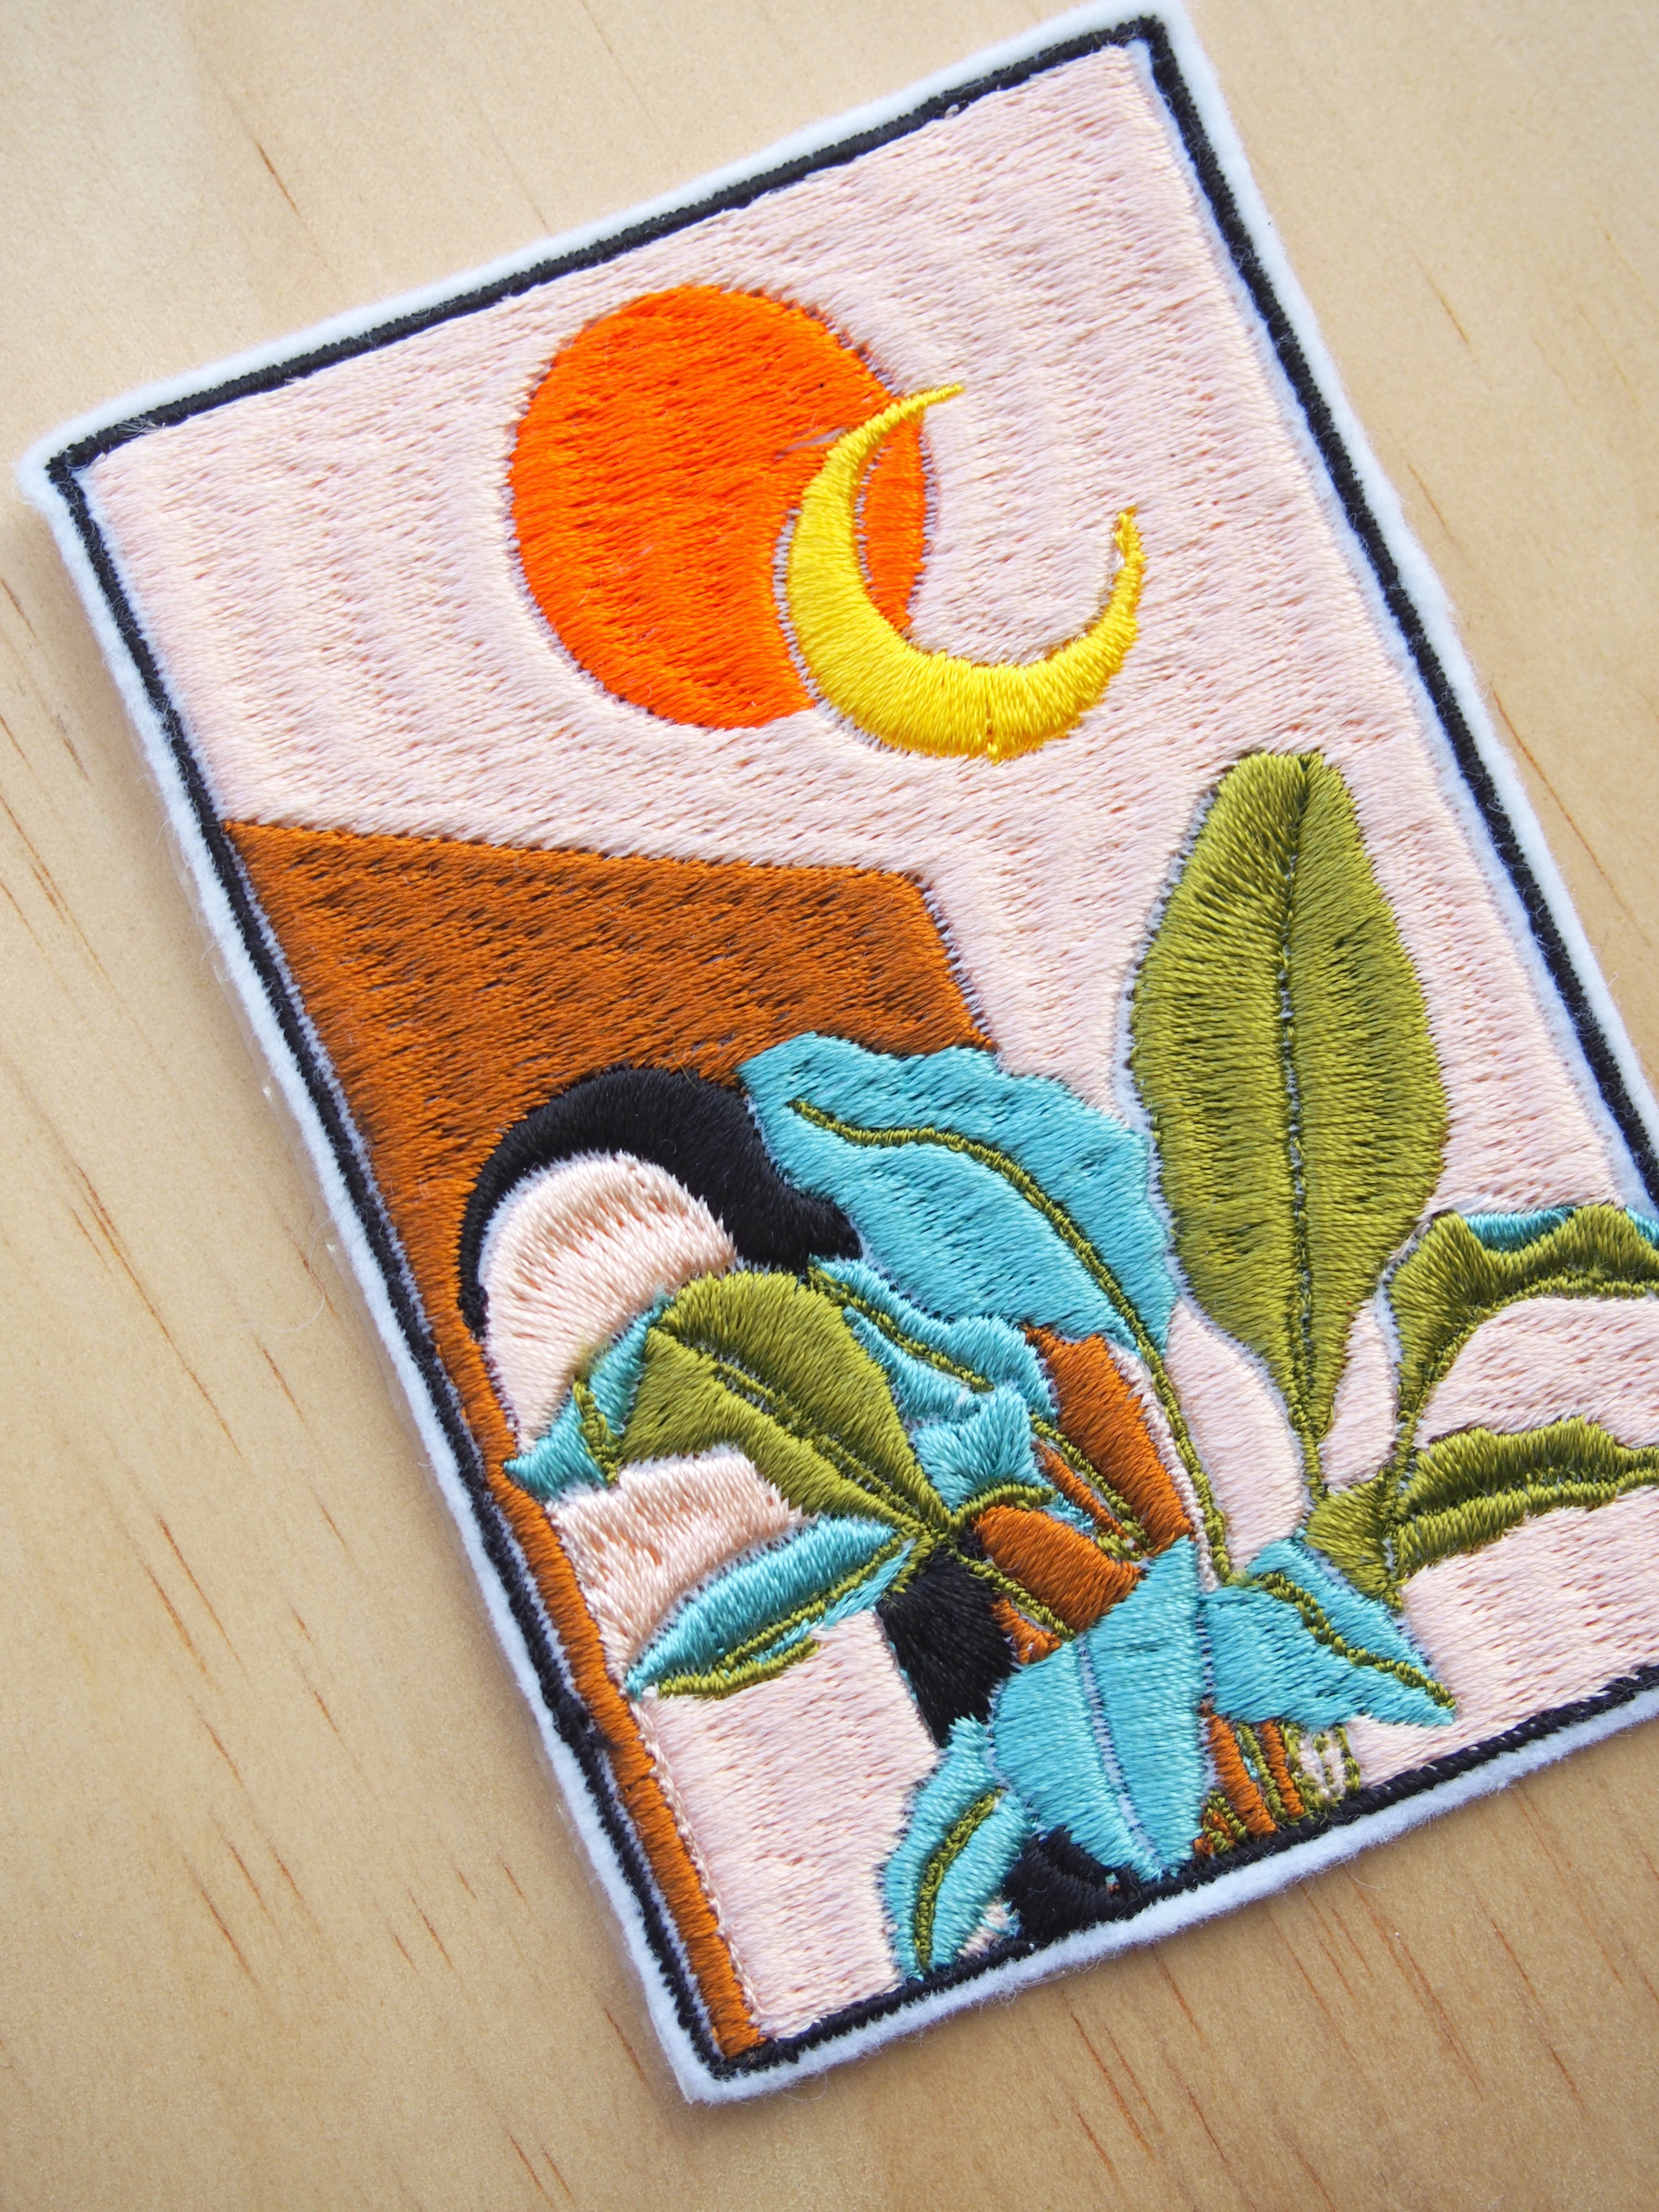 Sun & Moon embroideries